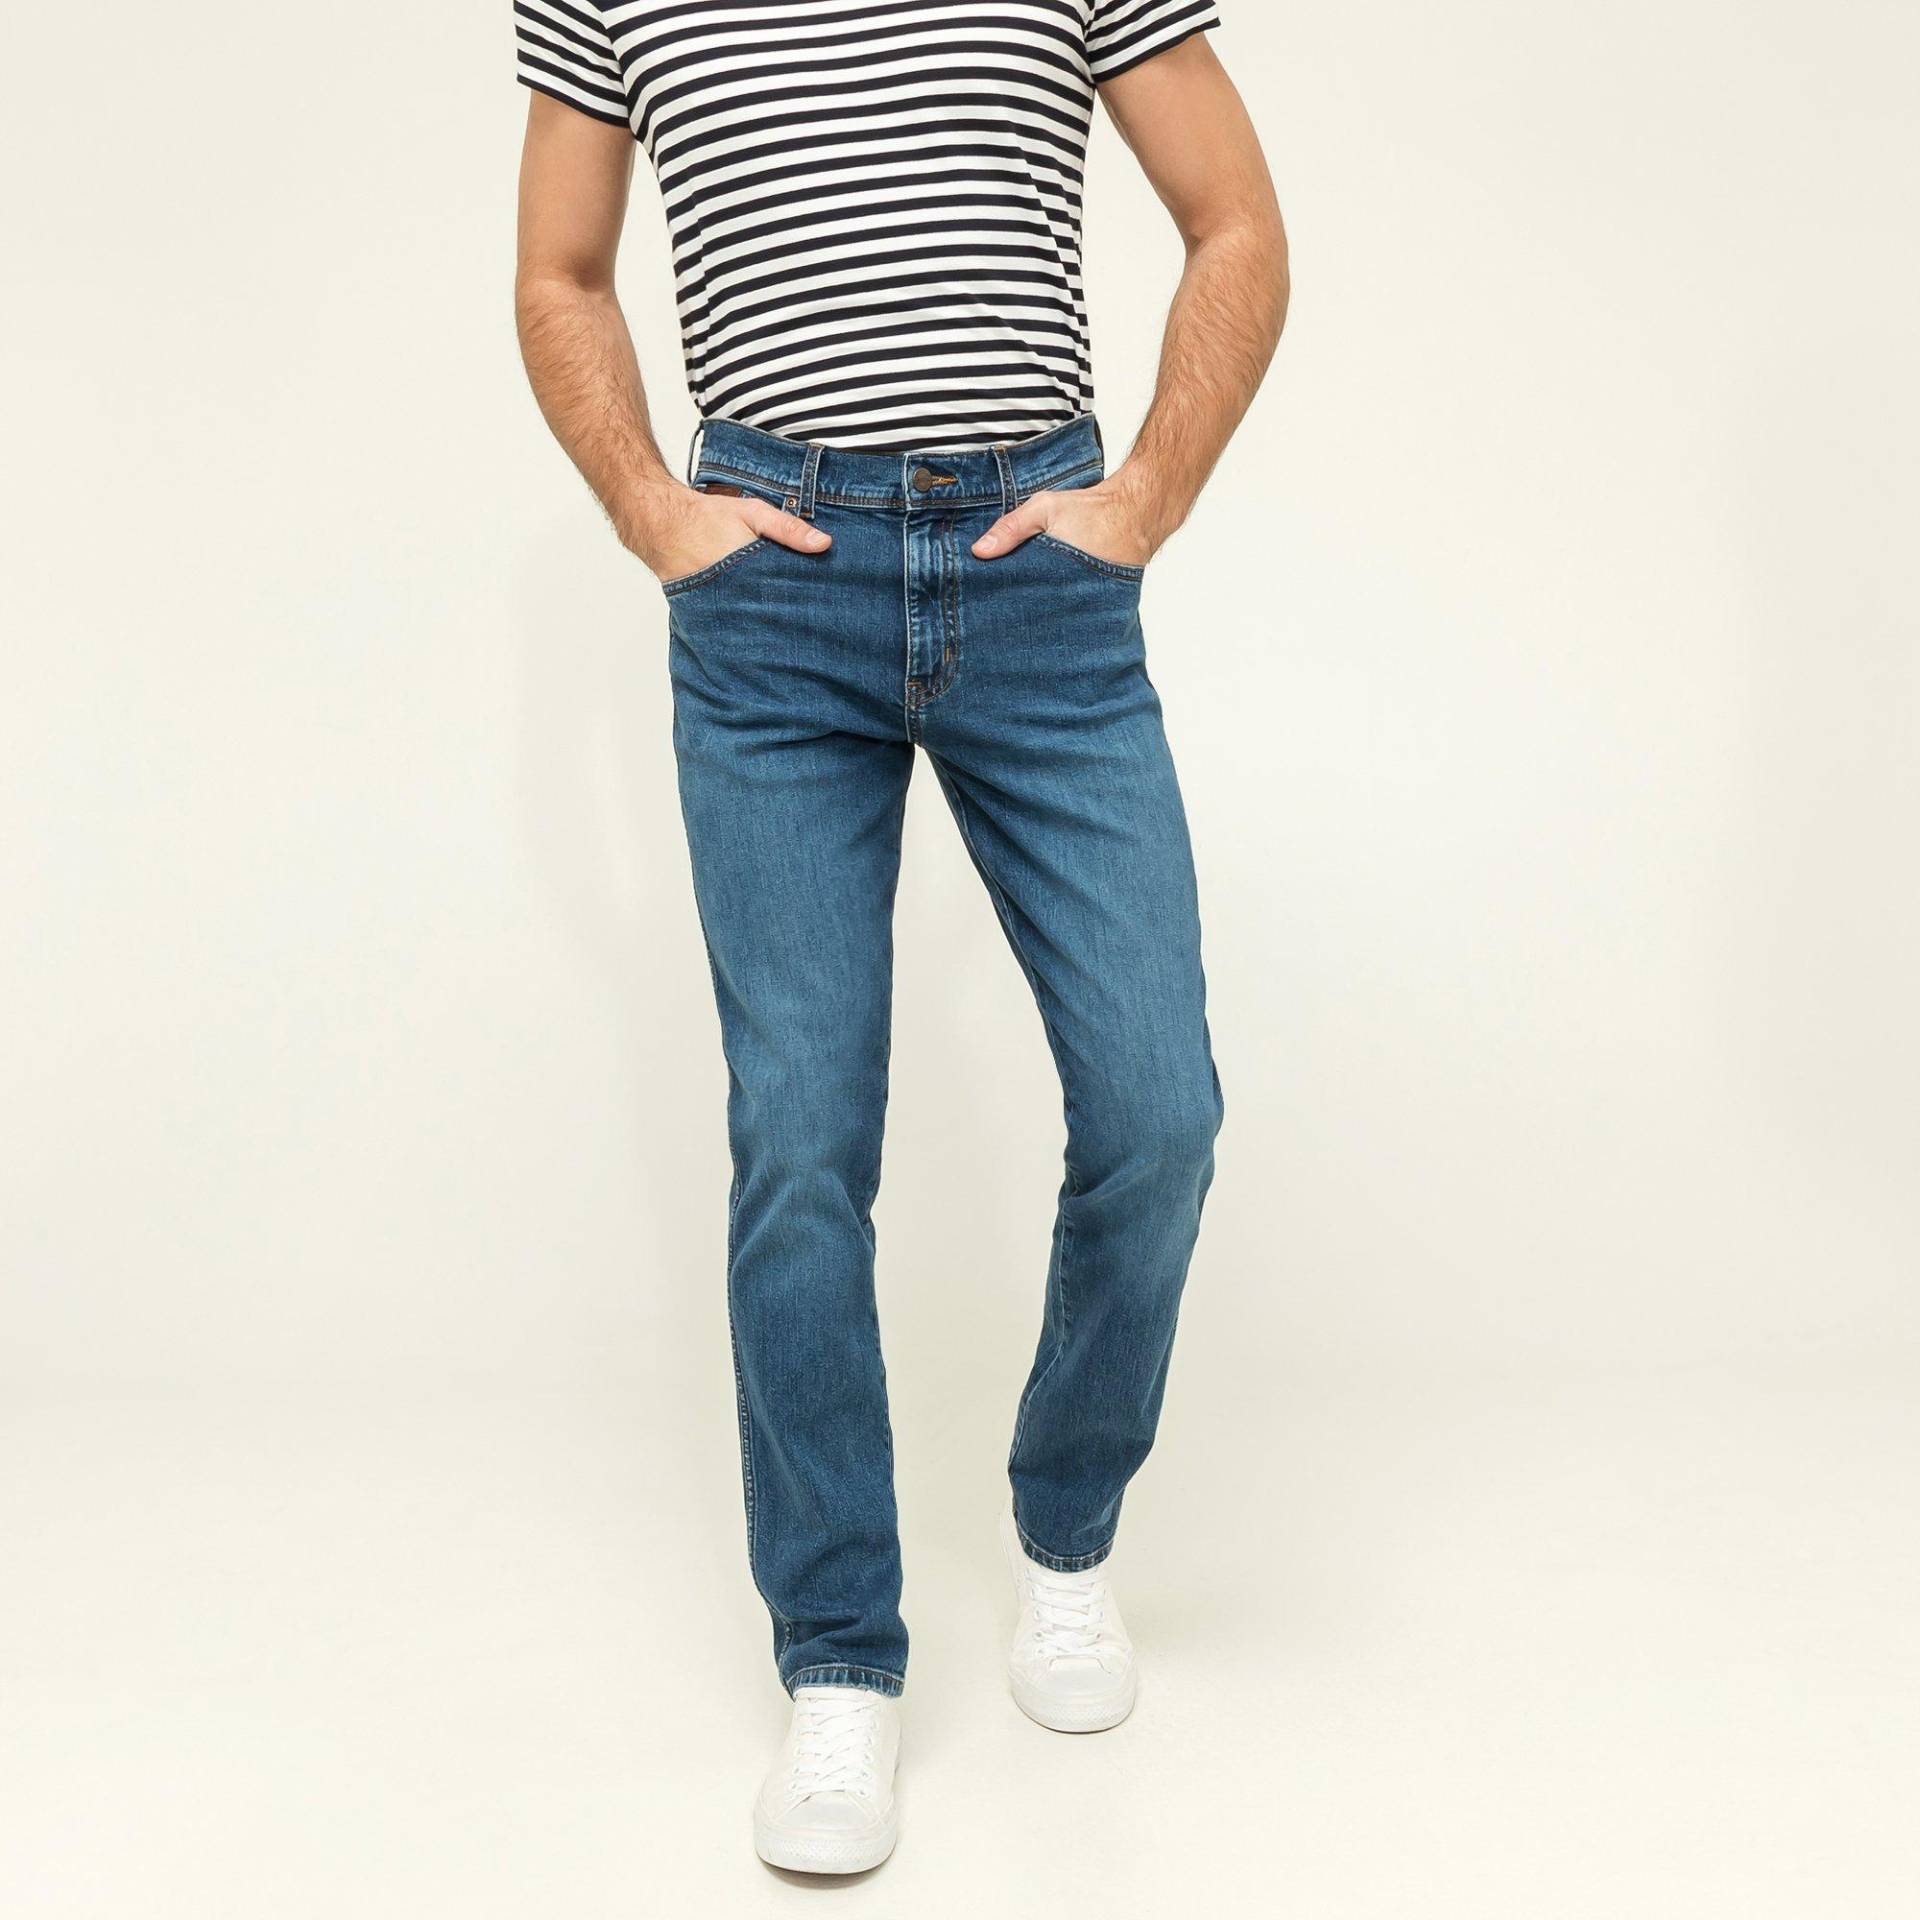 Jeans, Slim Fit Herren Blau Denim L34/W32 von Wrangler